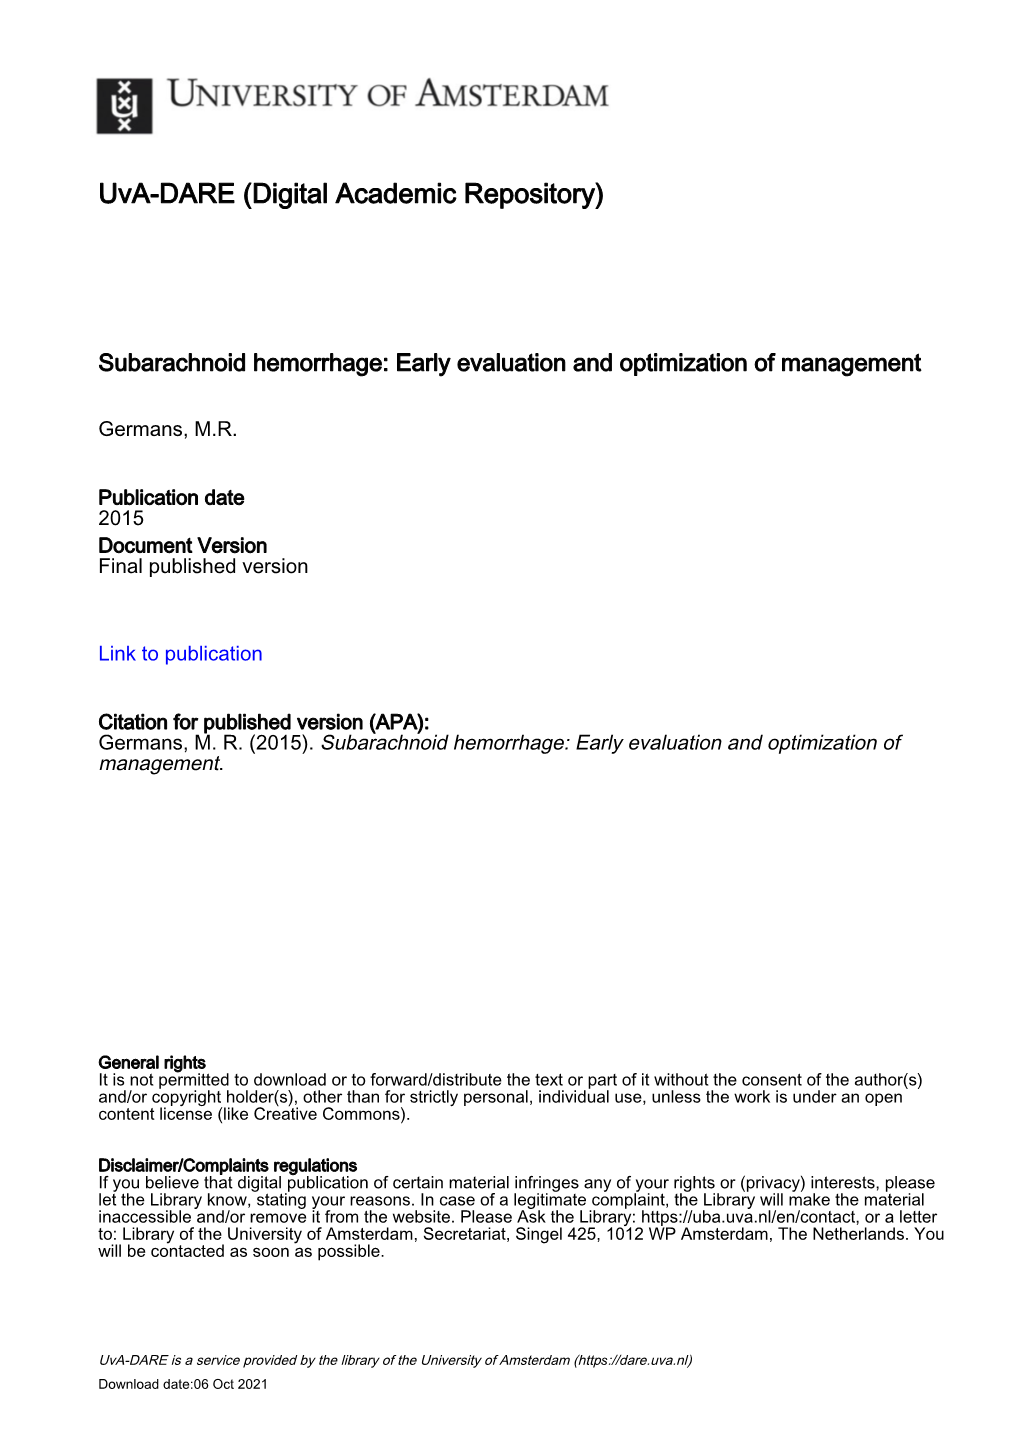 Subarachnoid Hemorrhage: Early Evaluation and Optimization of Management